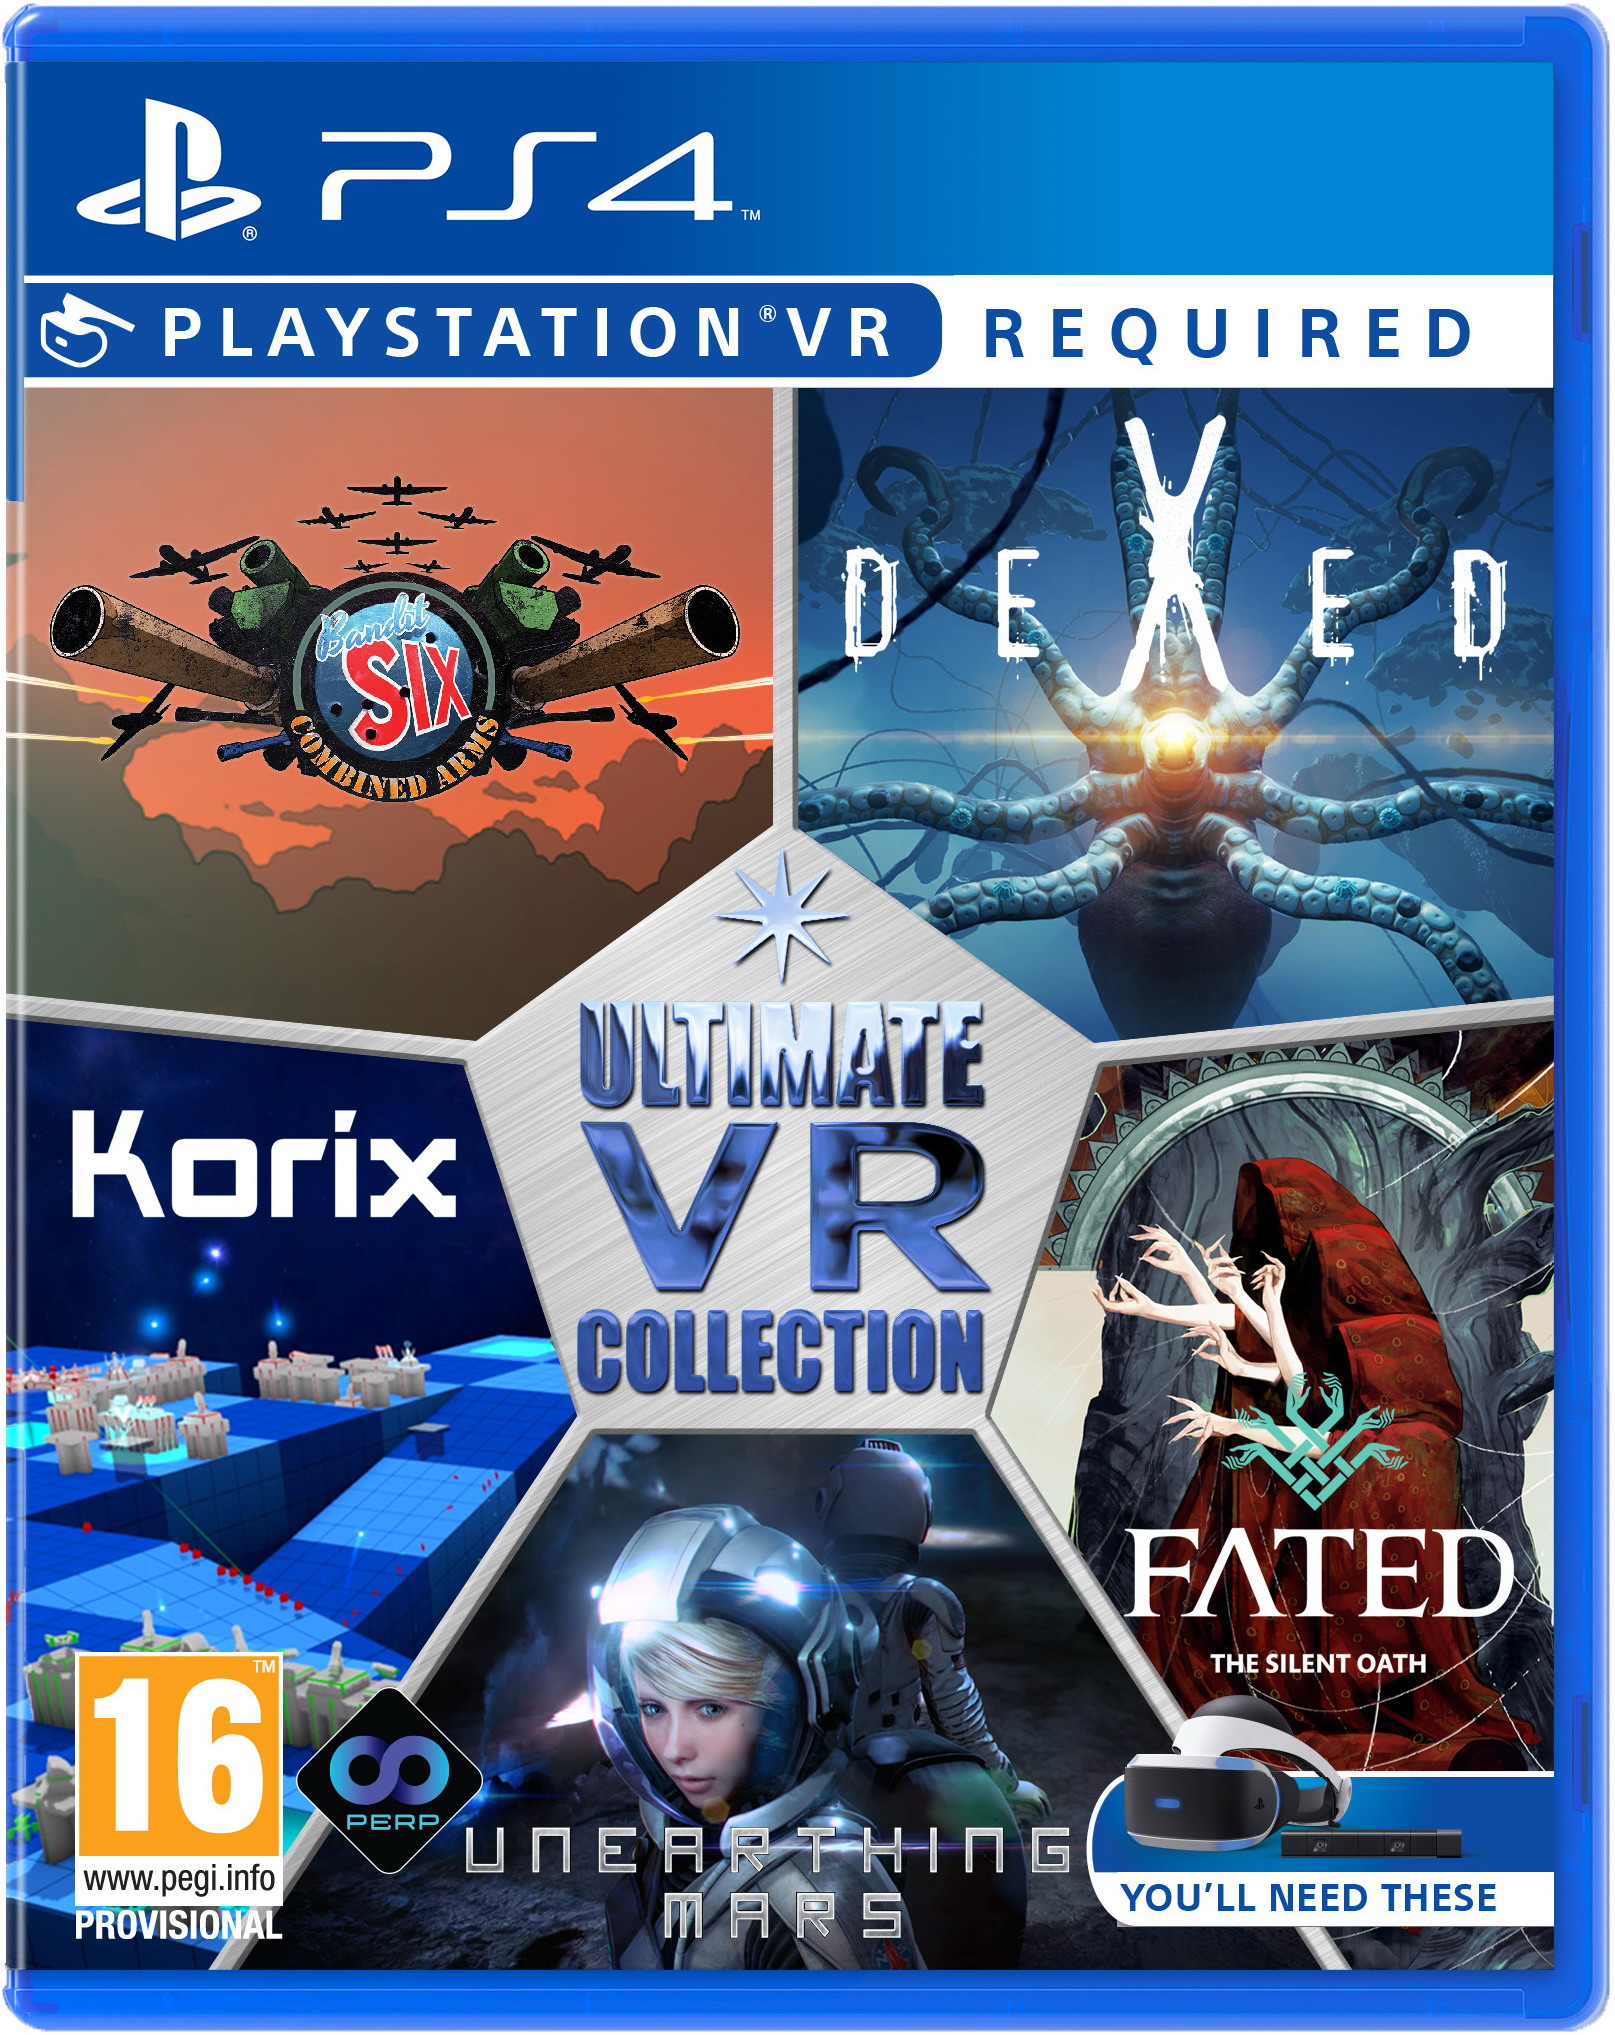 Коллекционные ps4. Zen Studios - Ultimate VR collection (только для VR) [ ps4,английская версия]. PLAYSTATION 4 VR. PLAYSTATION VR игры. Игры VR коллекция ps4.